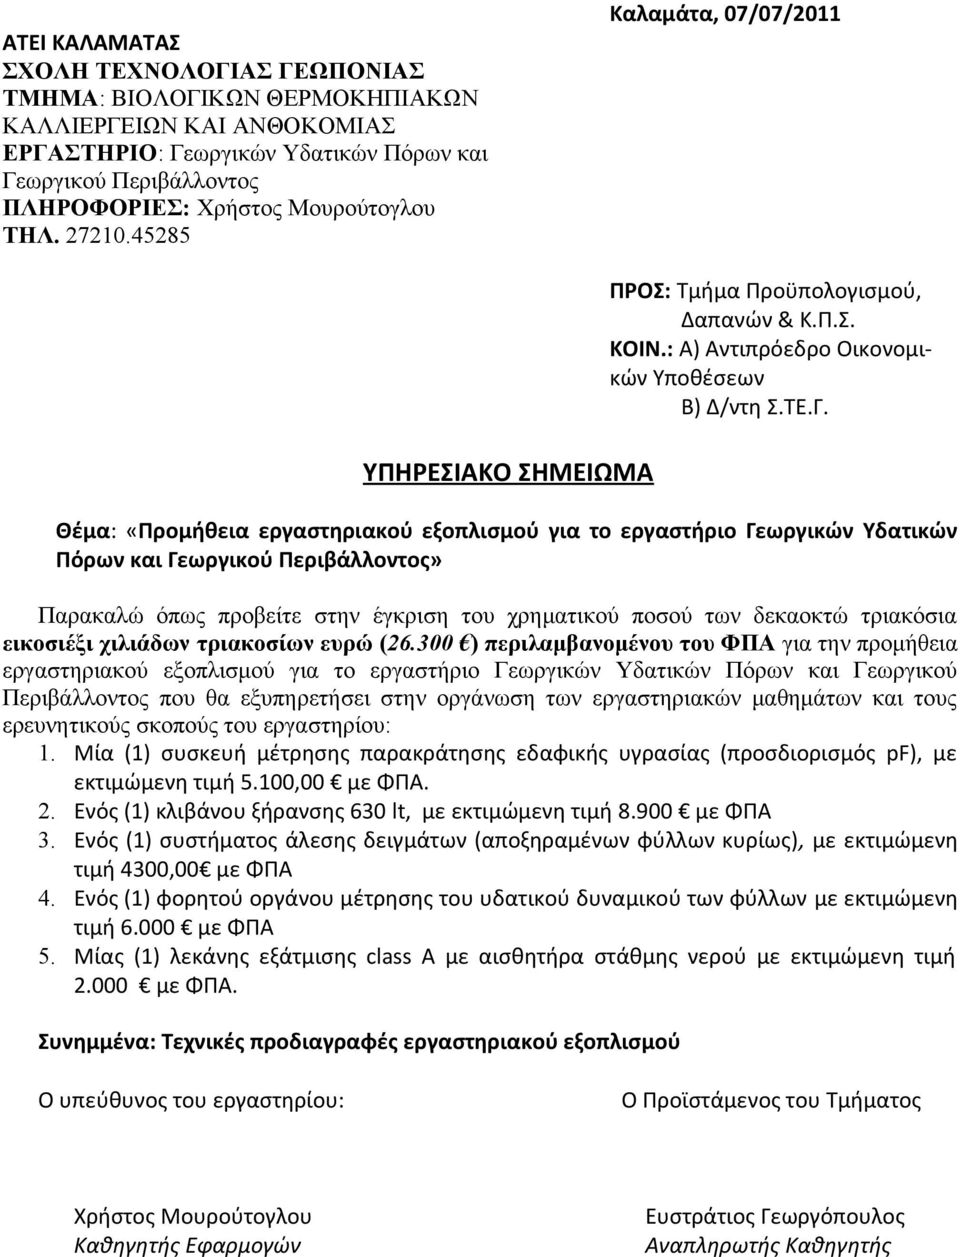 Θέμα: «Προμήθεια εργαστηριακού εξοπλισμού για το εργαστήριο Γεωργικών Υδατικών Πόρων και Γεωργικού Περιβάλλοντος» Παρακαλώ όπως προβείτε στην έγκριση του χρηματικού ποσού των δεκαοκτώ τριακόσια